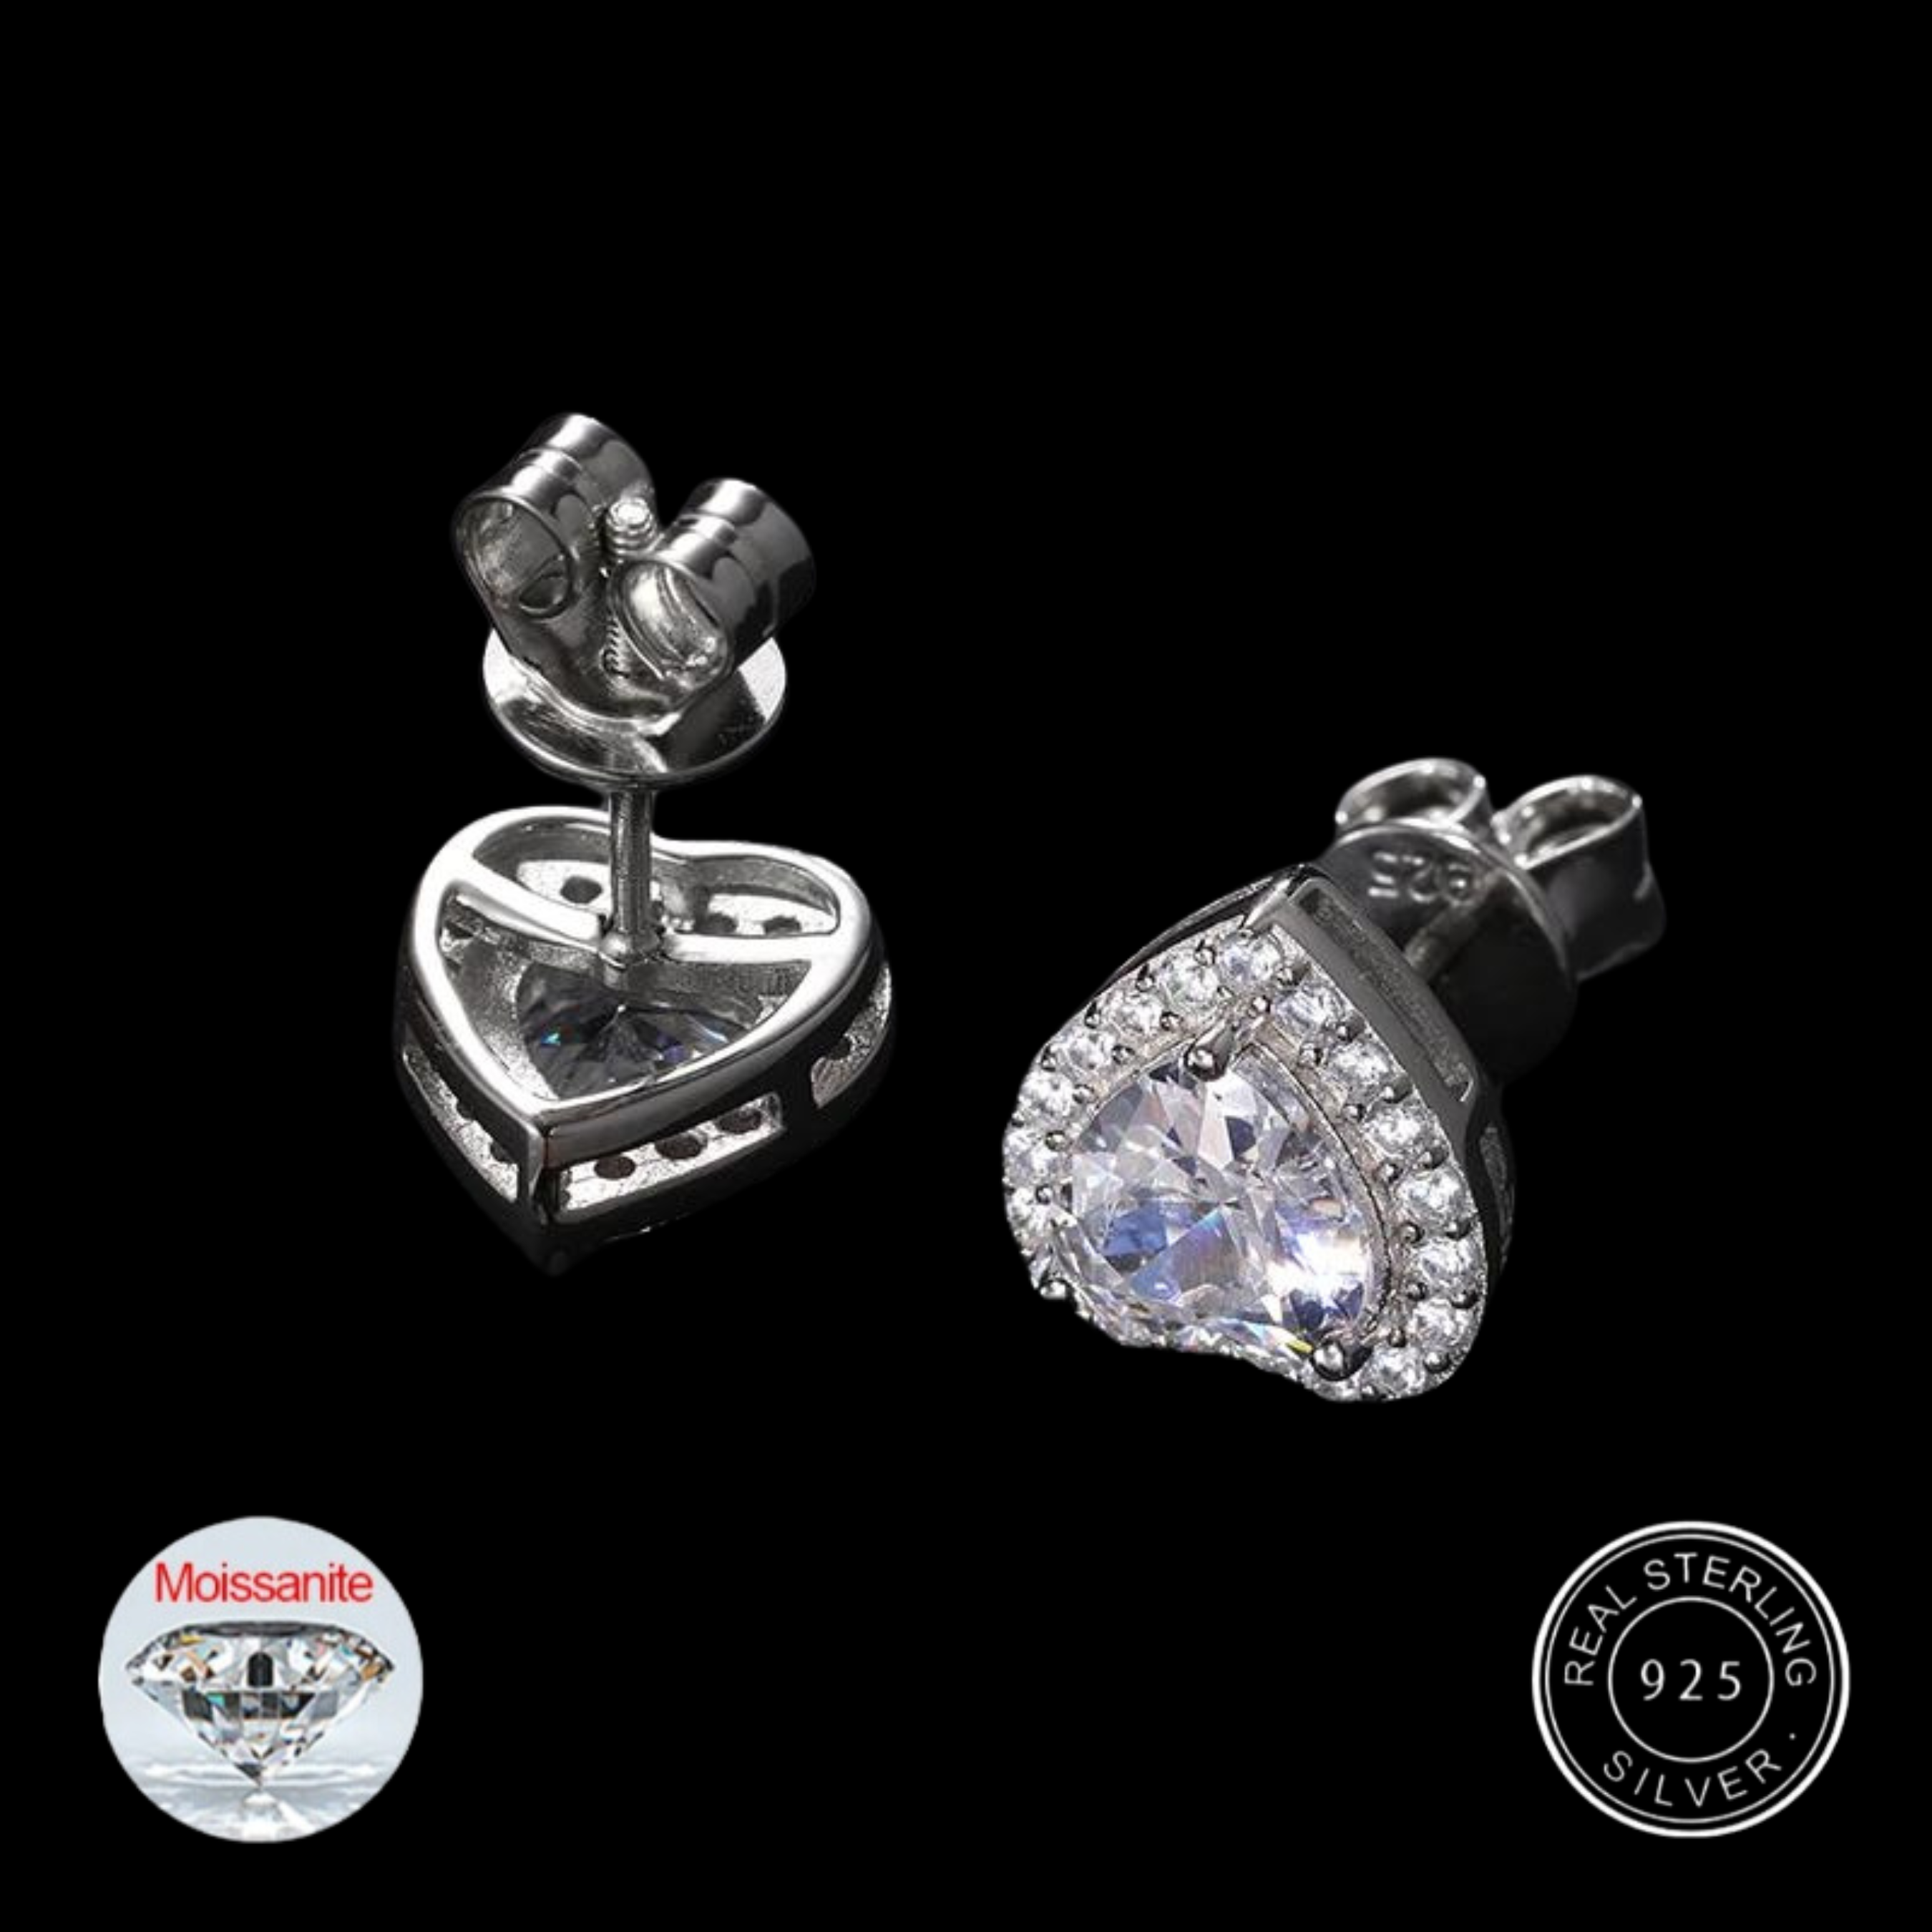 S925 Moissanite Diamond Clustered Heart Earrings - White Gold